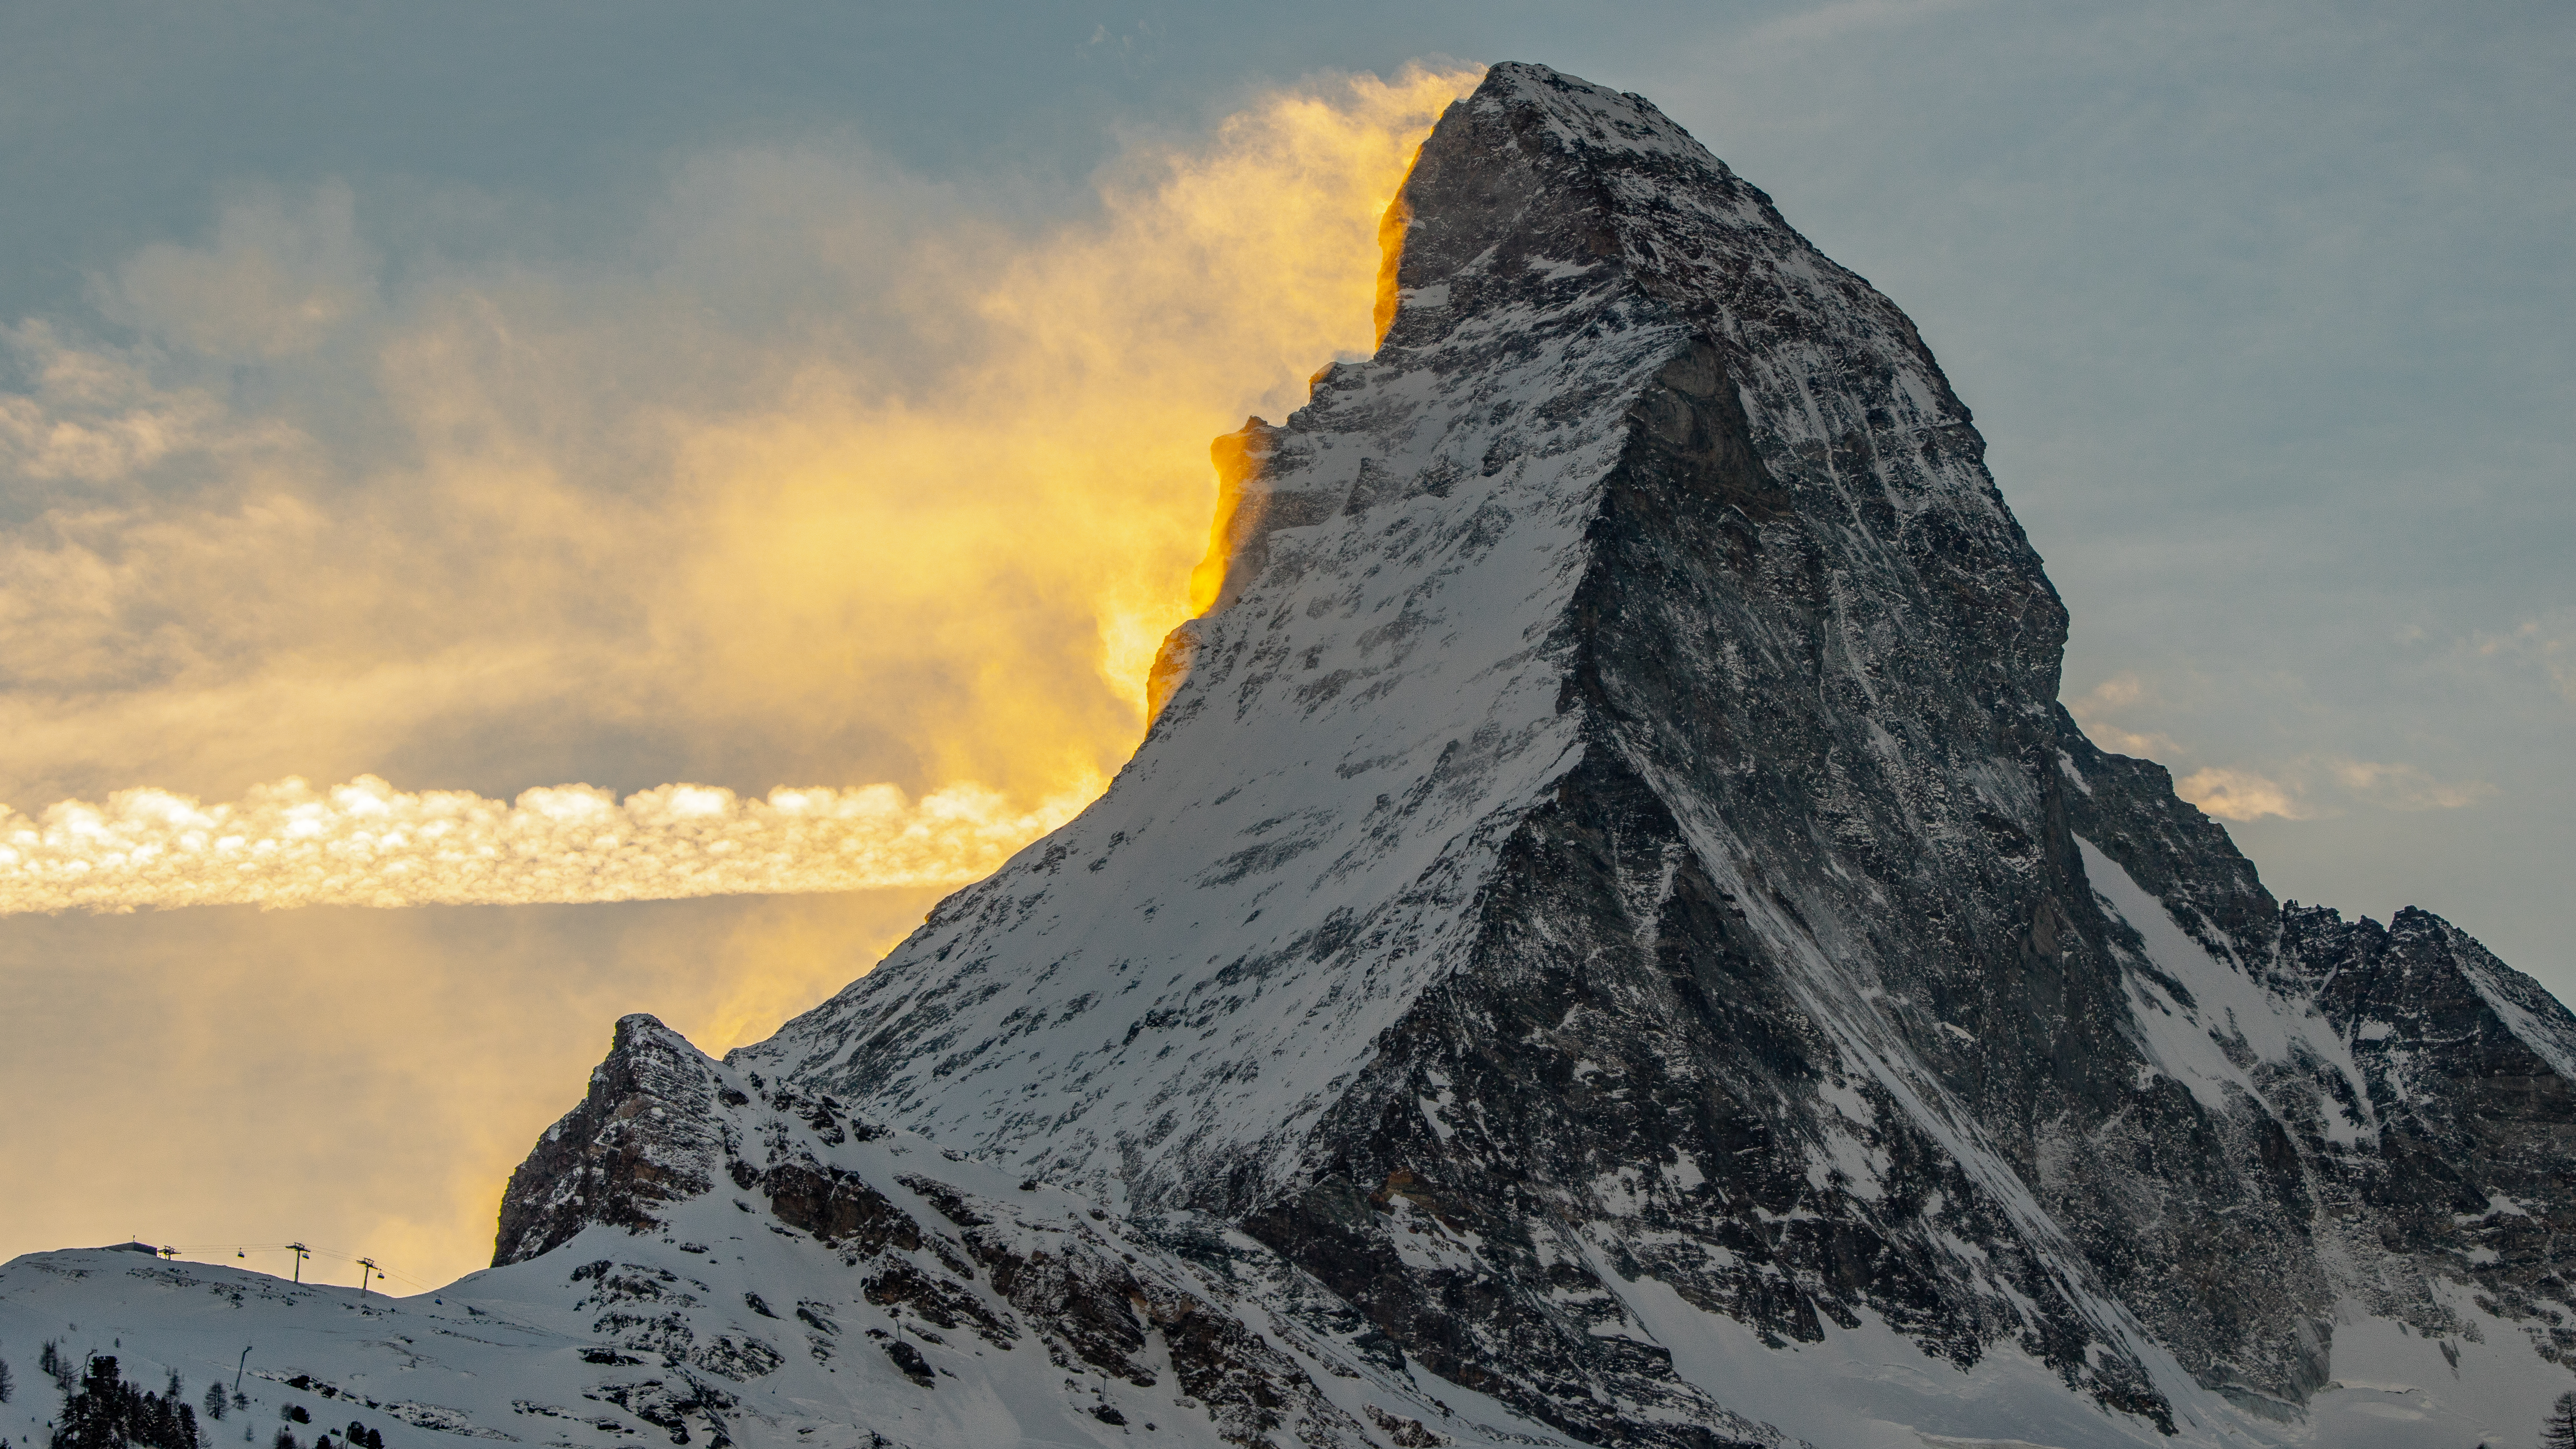 General 6000x3375 Switzerland landscape mountains summit Matterhorn winter snow skiing sunset Cervino